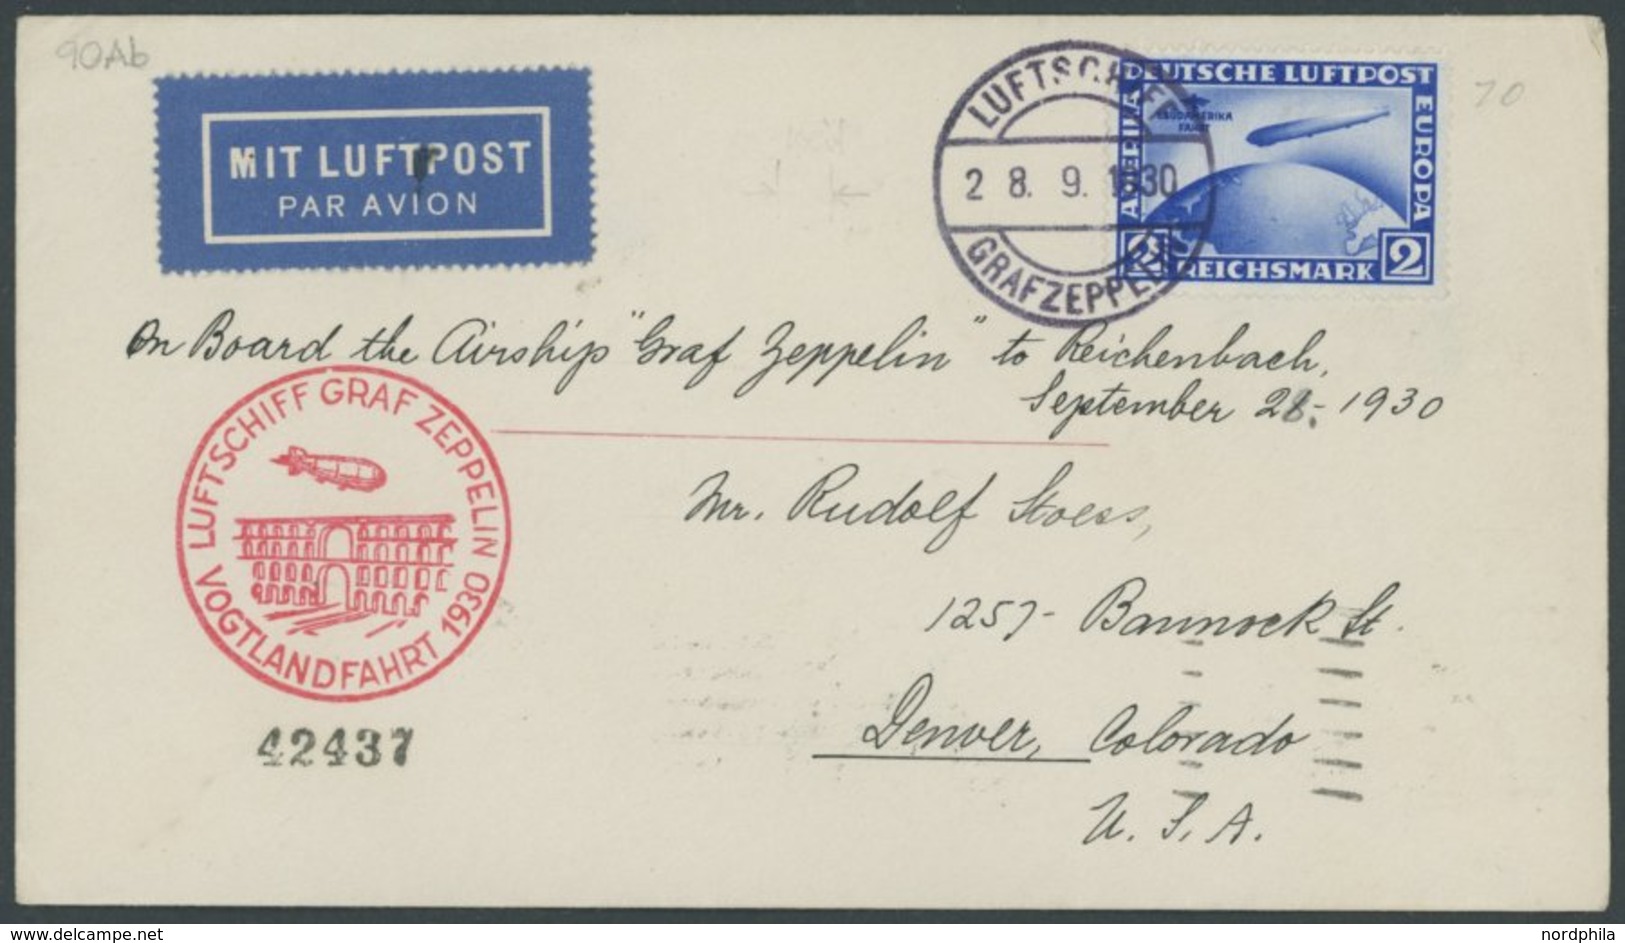 ZEPPELINPOST 90Ab BRIEF, 1930, Vogtlandfahrt, Bordpost Der Hinfahrt, Nach Denver/Colorado, Frankiert Mit 2 RM, Prachtbri - Airmail & Zeppelin